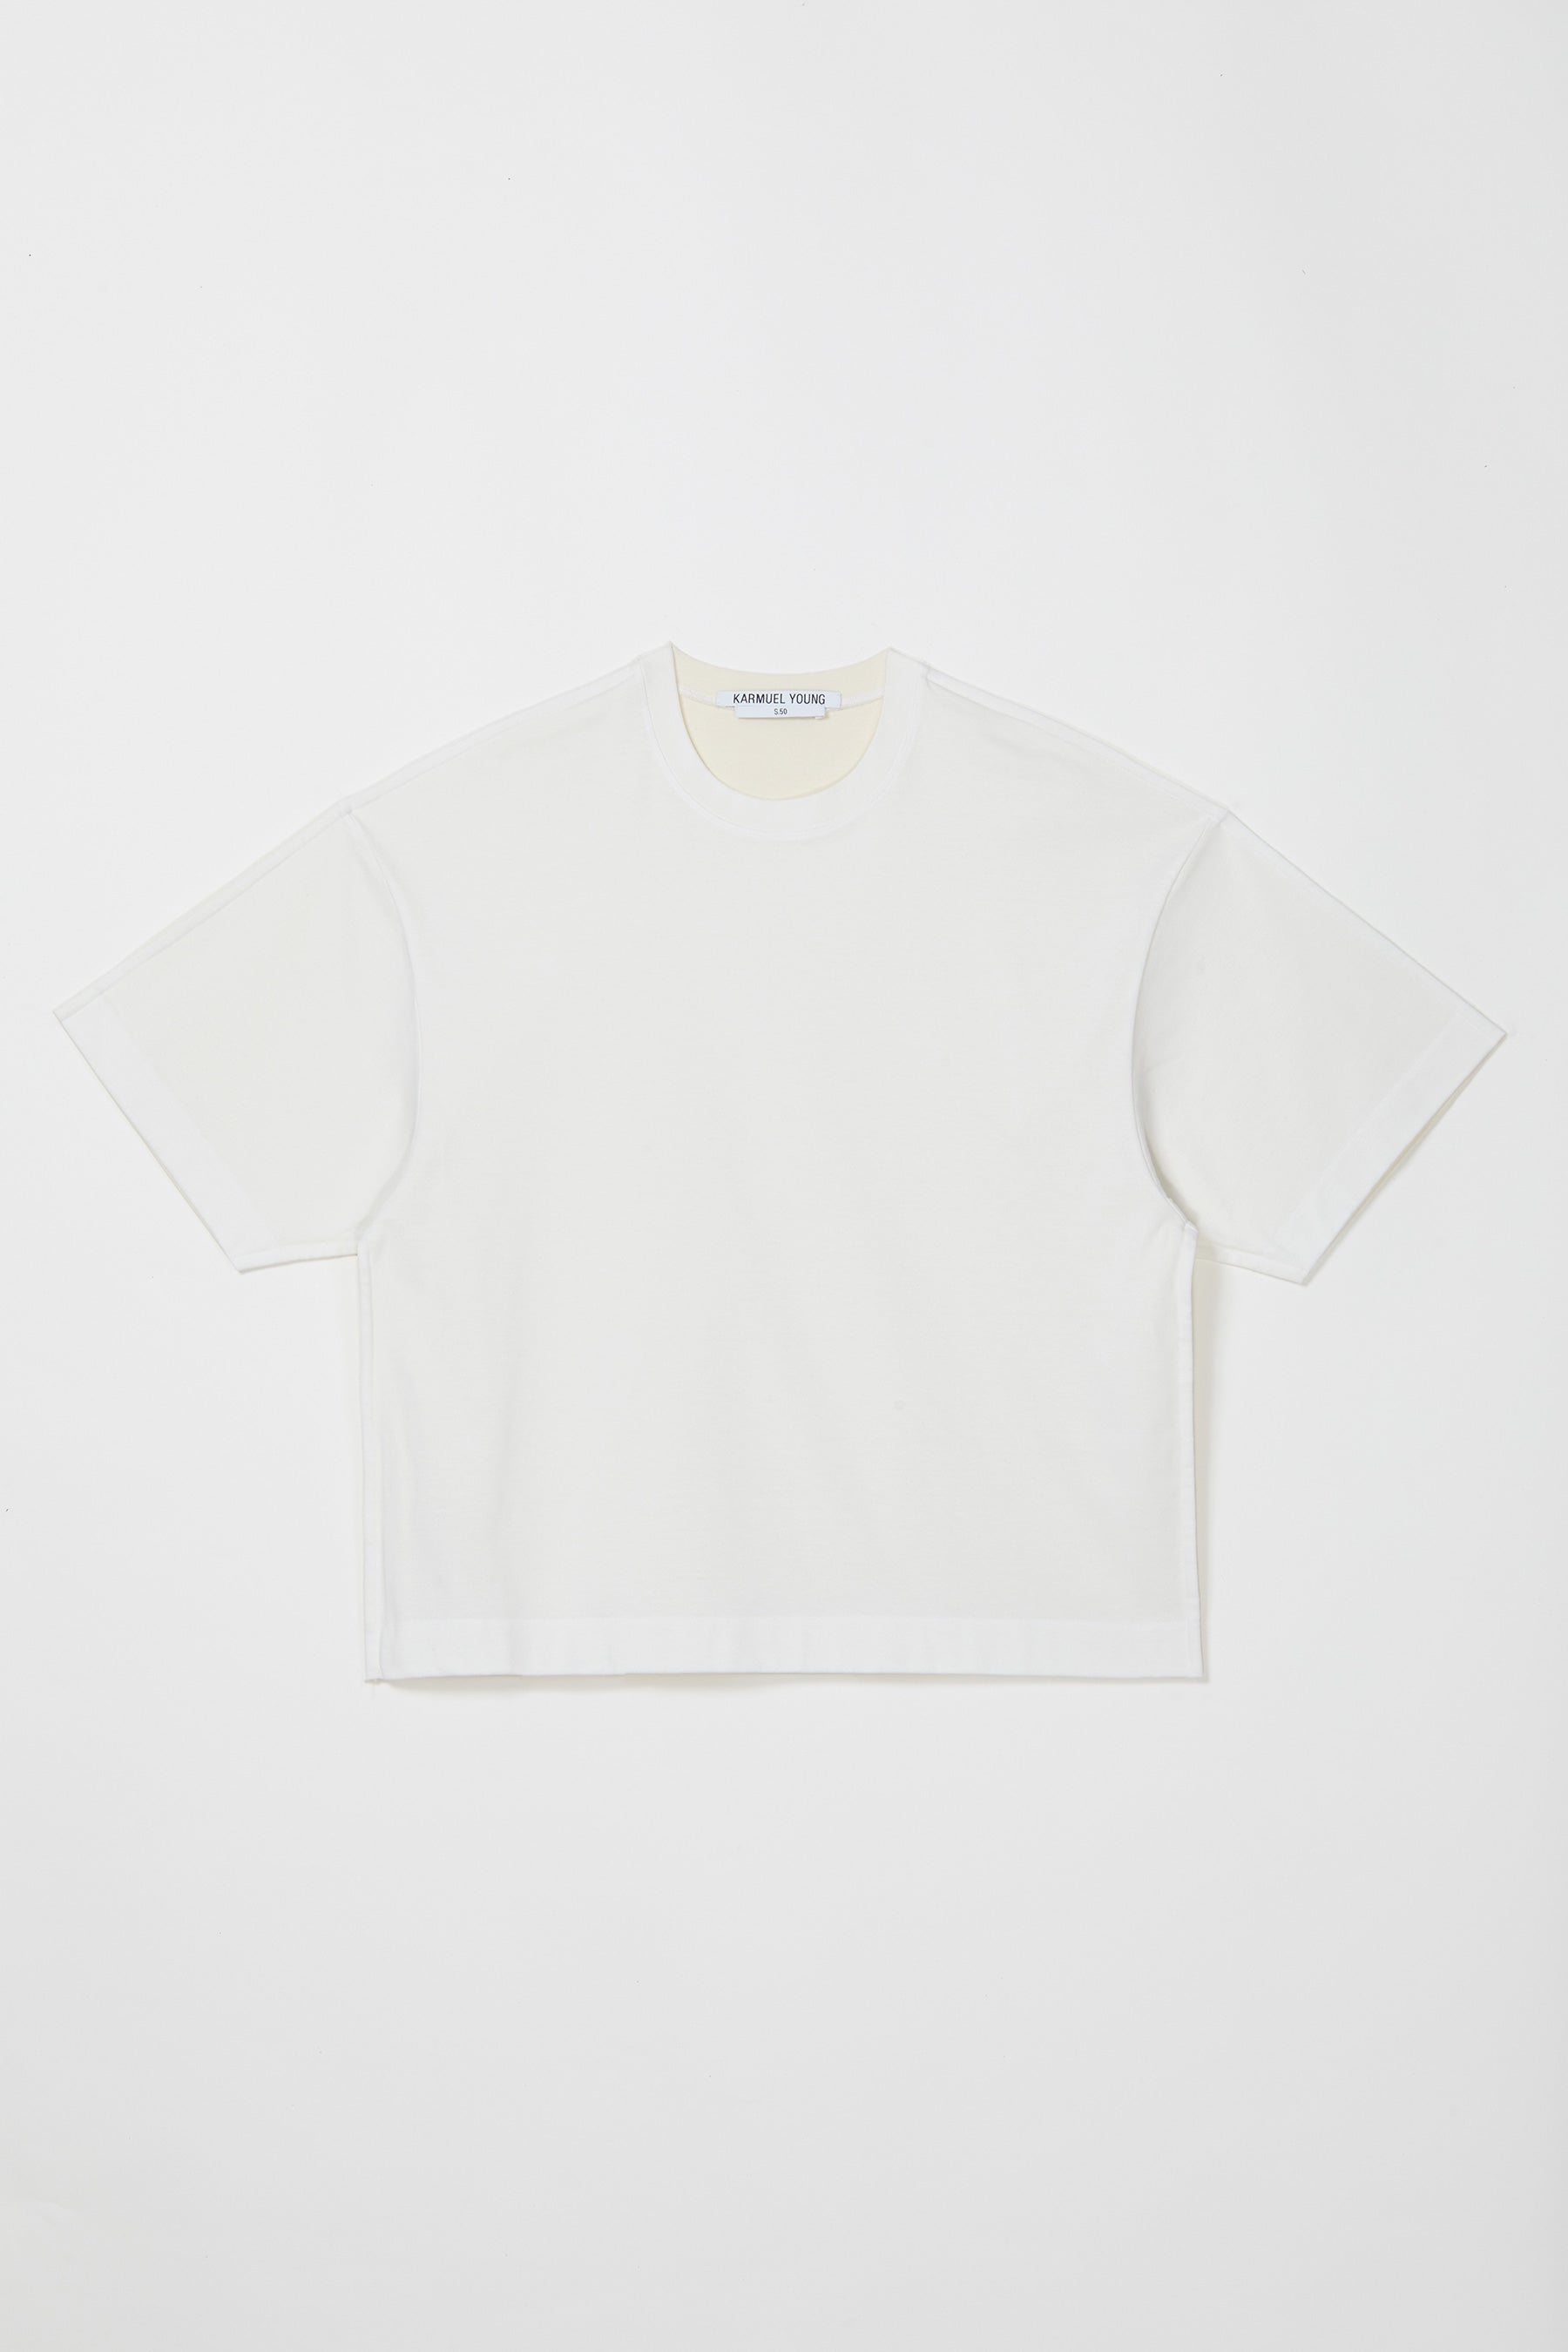 White Cotton Square XY-plane T-Shirt